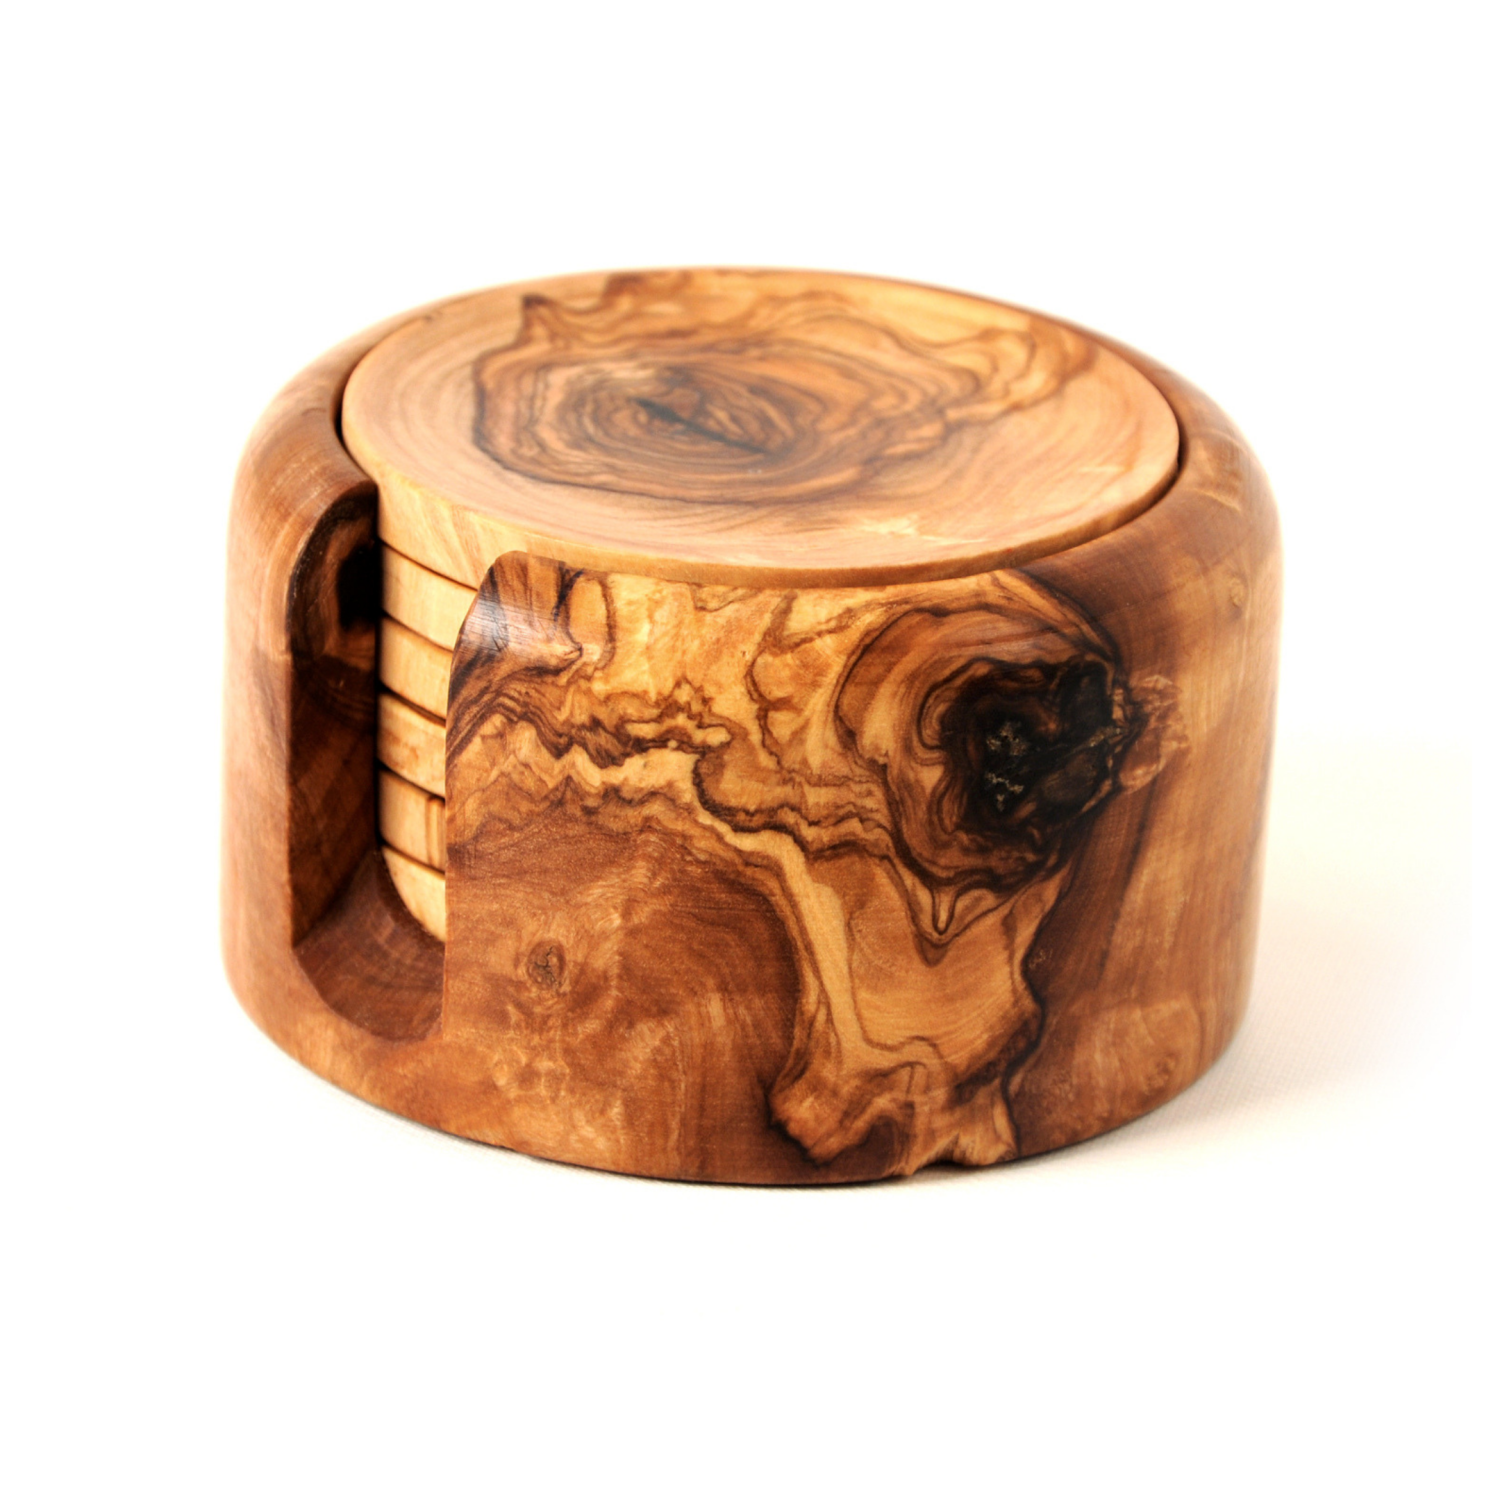 Beldinest Olive Wood Coaster Set Of 6, Wooden Coaster Set With Holder